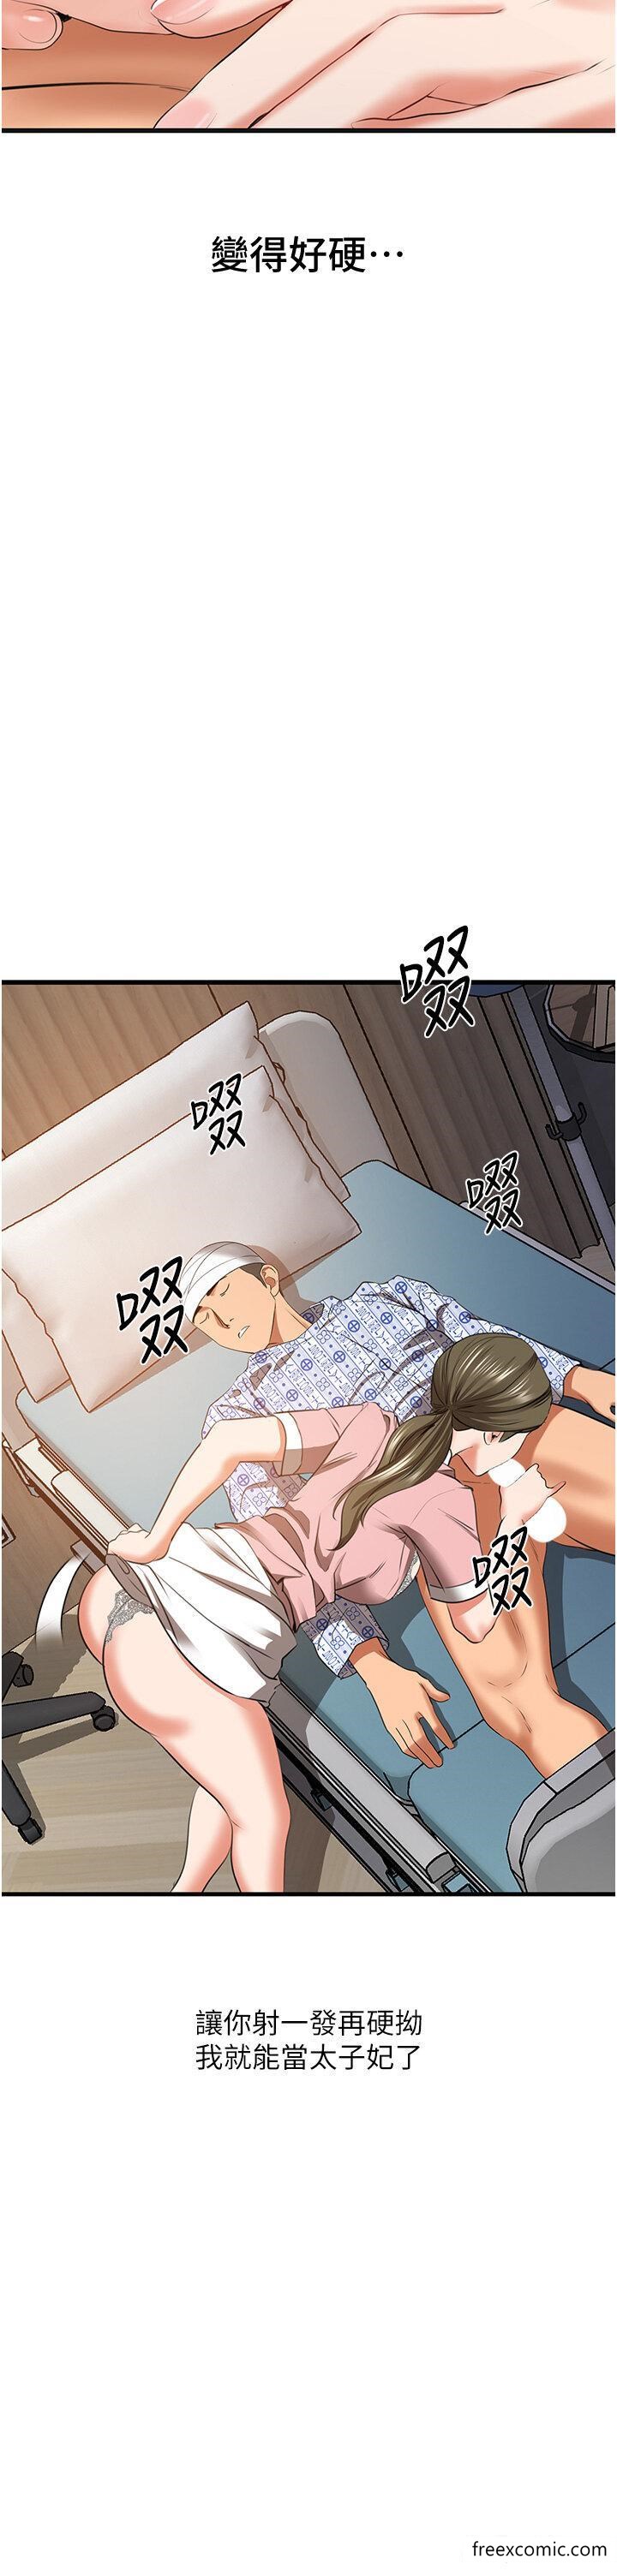 韩国漫画地表最屌卧底干员韩漫_地表最屌卧底干员-第6话-VIP病患的特殊服务在线免费阅读-韩国漫画-第25张图片